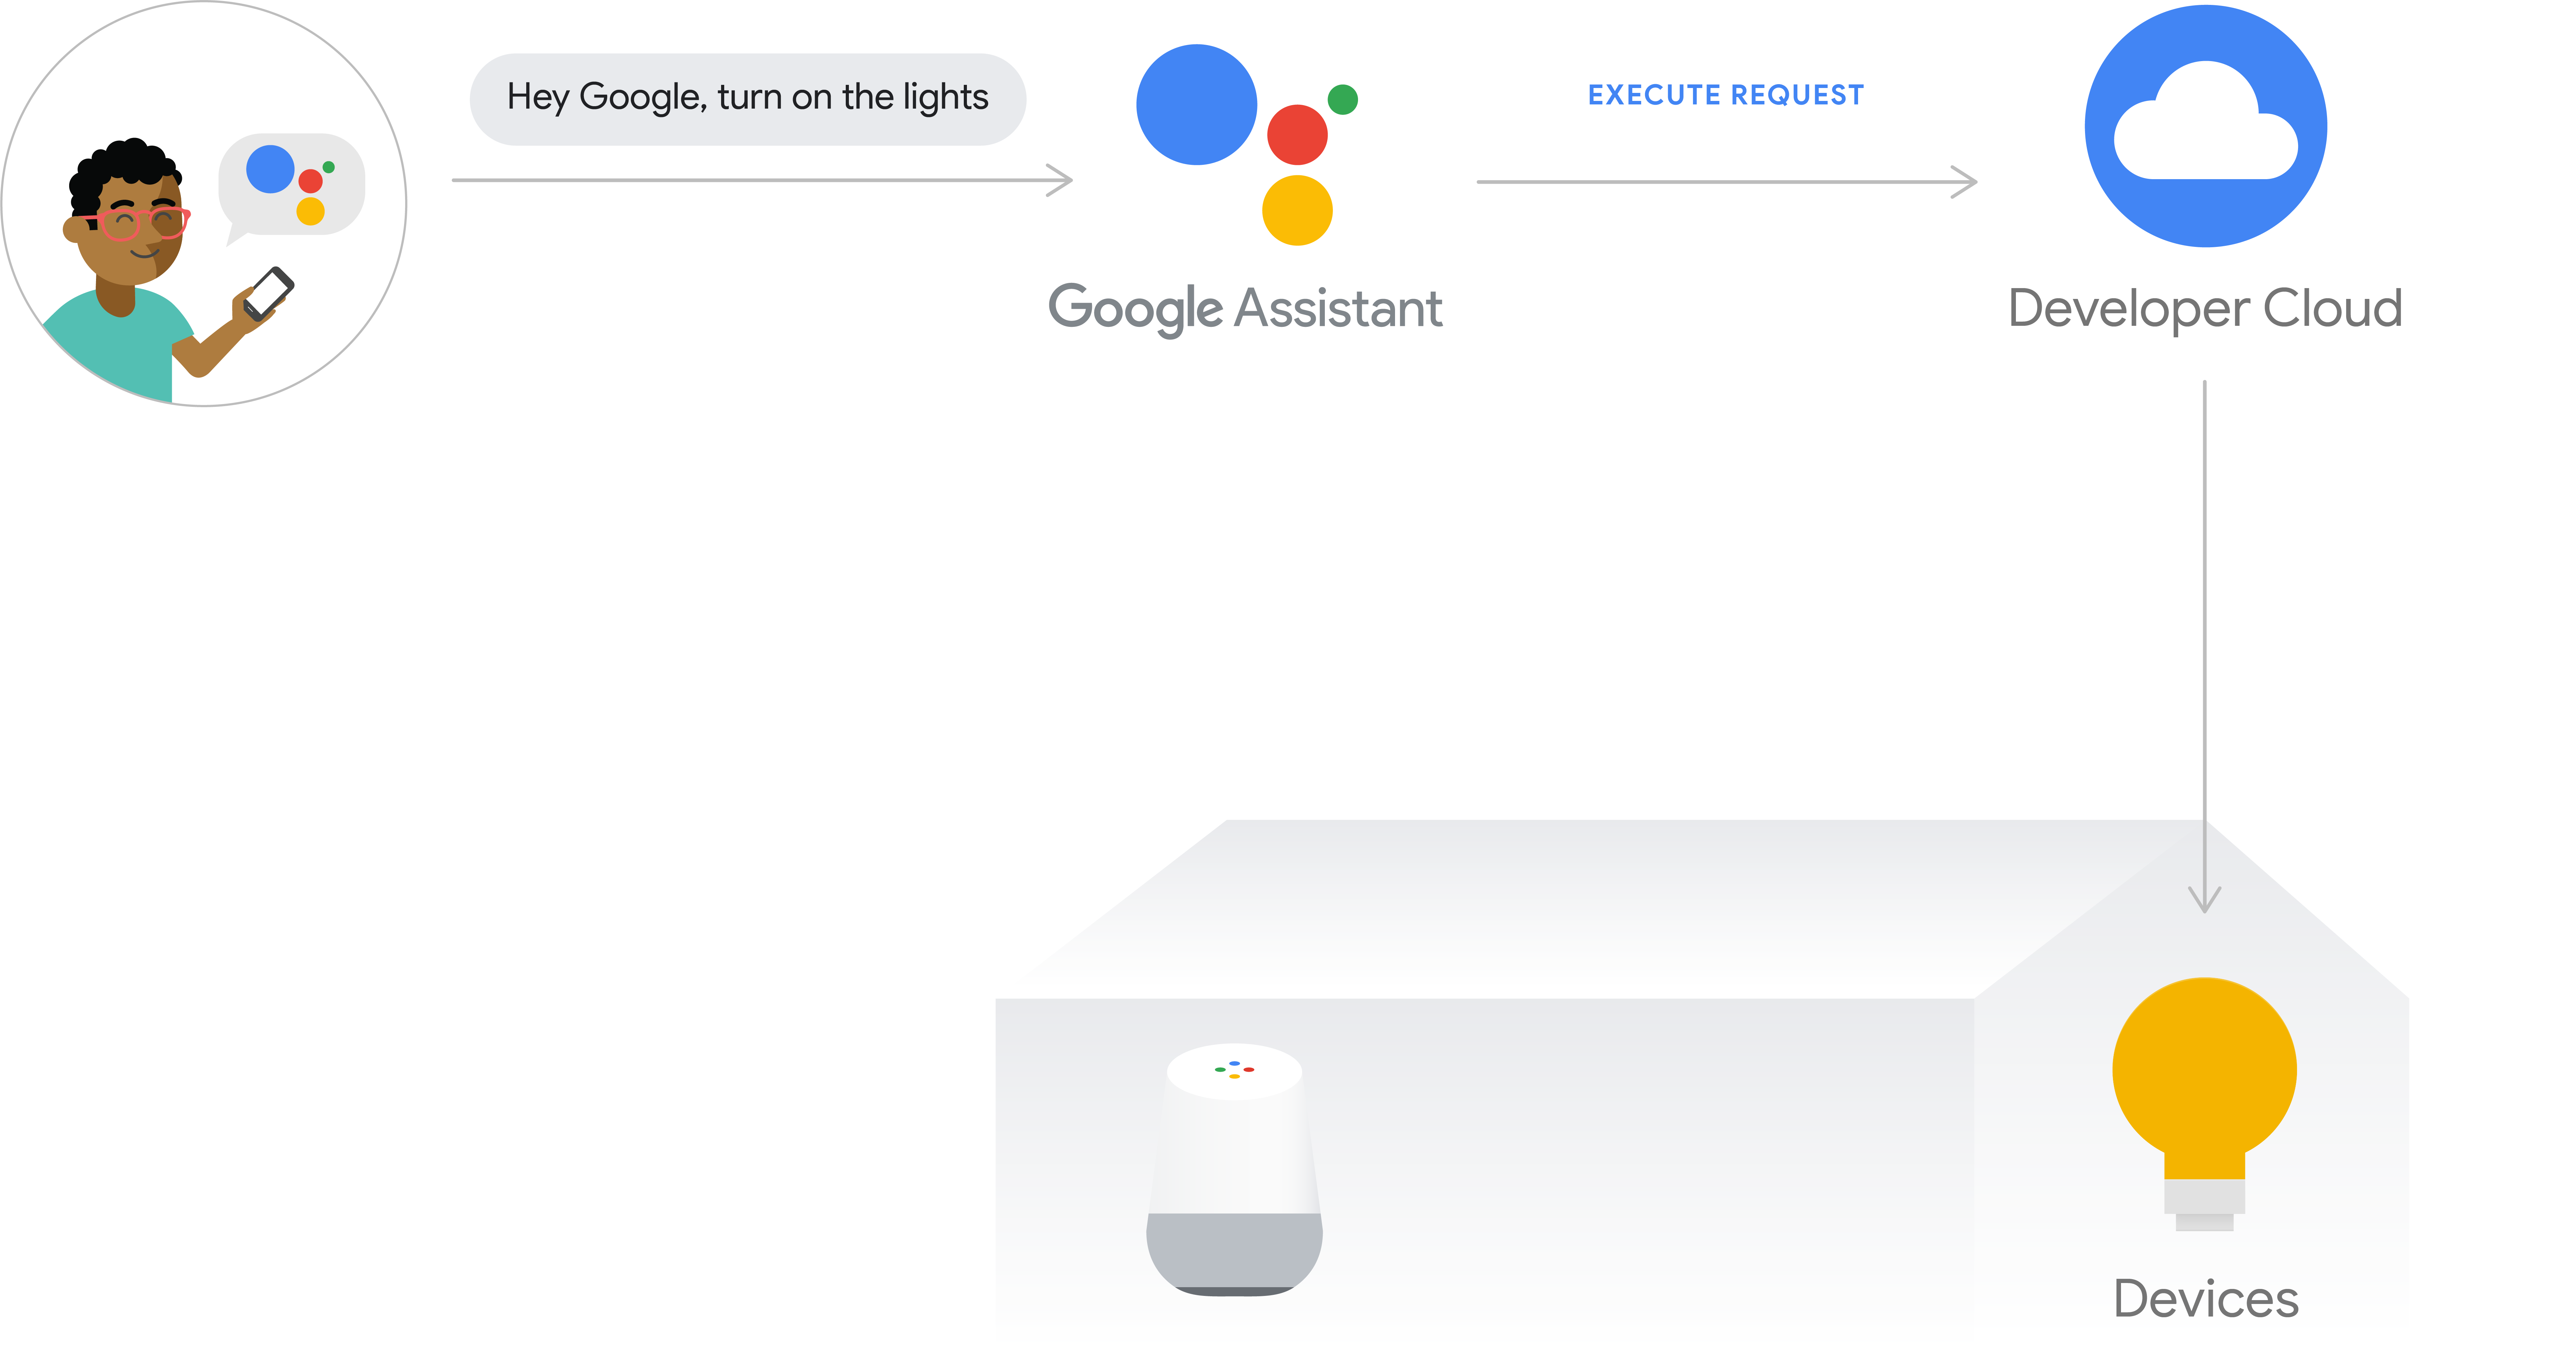 รูปนี้แสดงขั้นตอนการดําเนินการสําหรับการดําเนินการในระบบคลาวด์ เส้นทางการดําเนินการจะแสดงความตั้งใจของผู้ใช้จากโทรศัพท์ด้วย Google Assistant จากนั้น Google Cloud จะประมวลผลความตั้งใจของผู้ใช้ จากนั้นคําขอจะส่งไปยังระบบคลาวด์ของนักพัฒนา จากนั้นจะออกคําสั่งไปยังฮับอุปกรณ์หรืออุปกรณ์โดยตรง